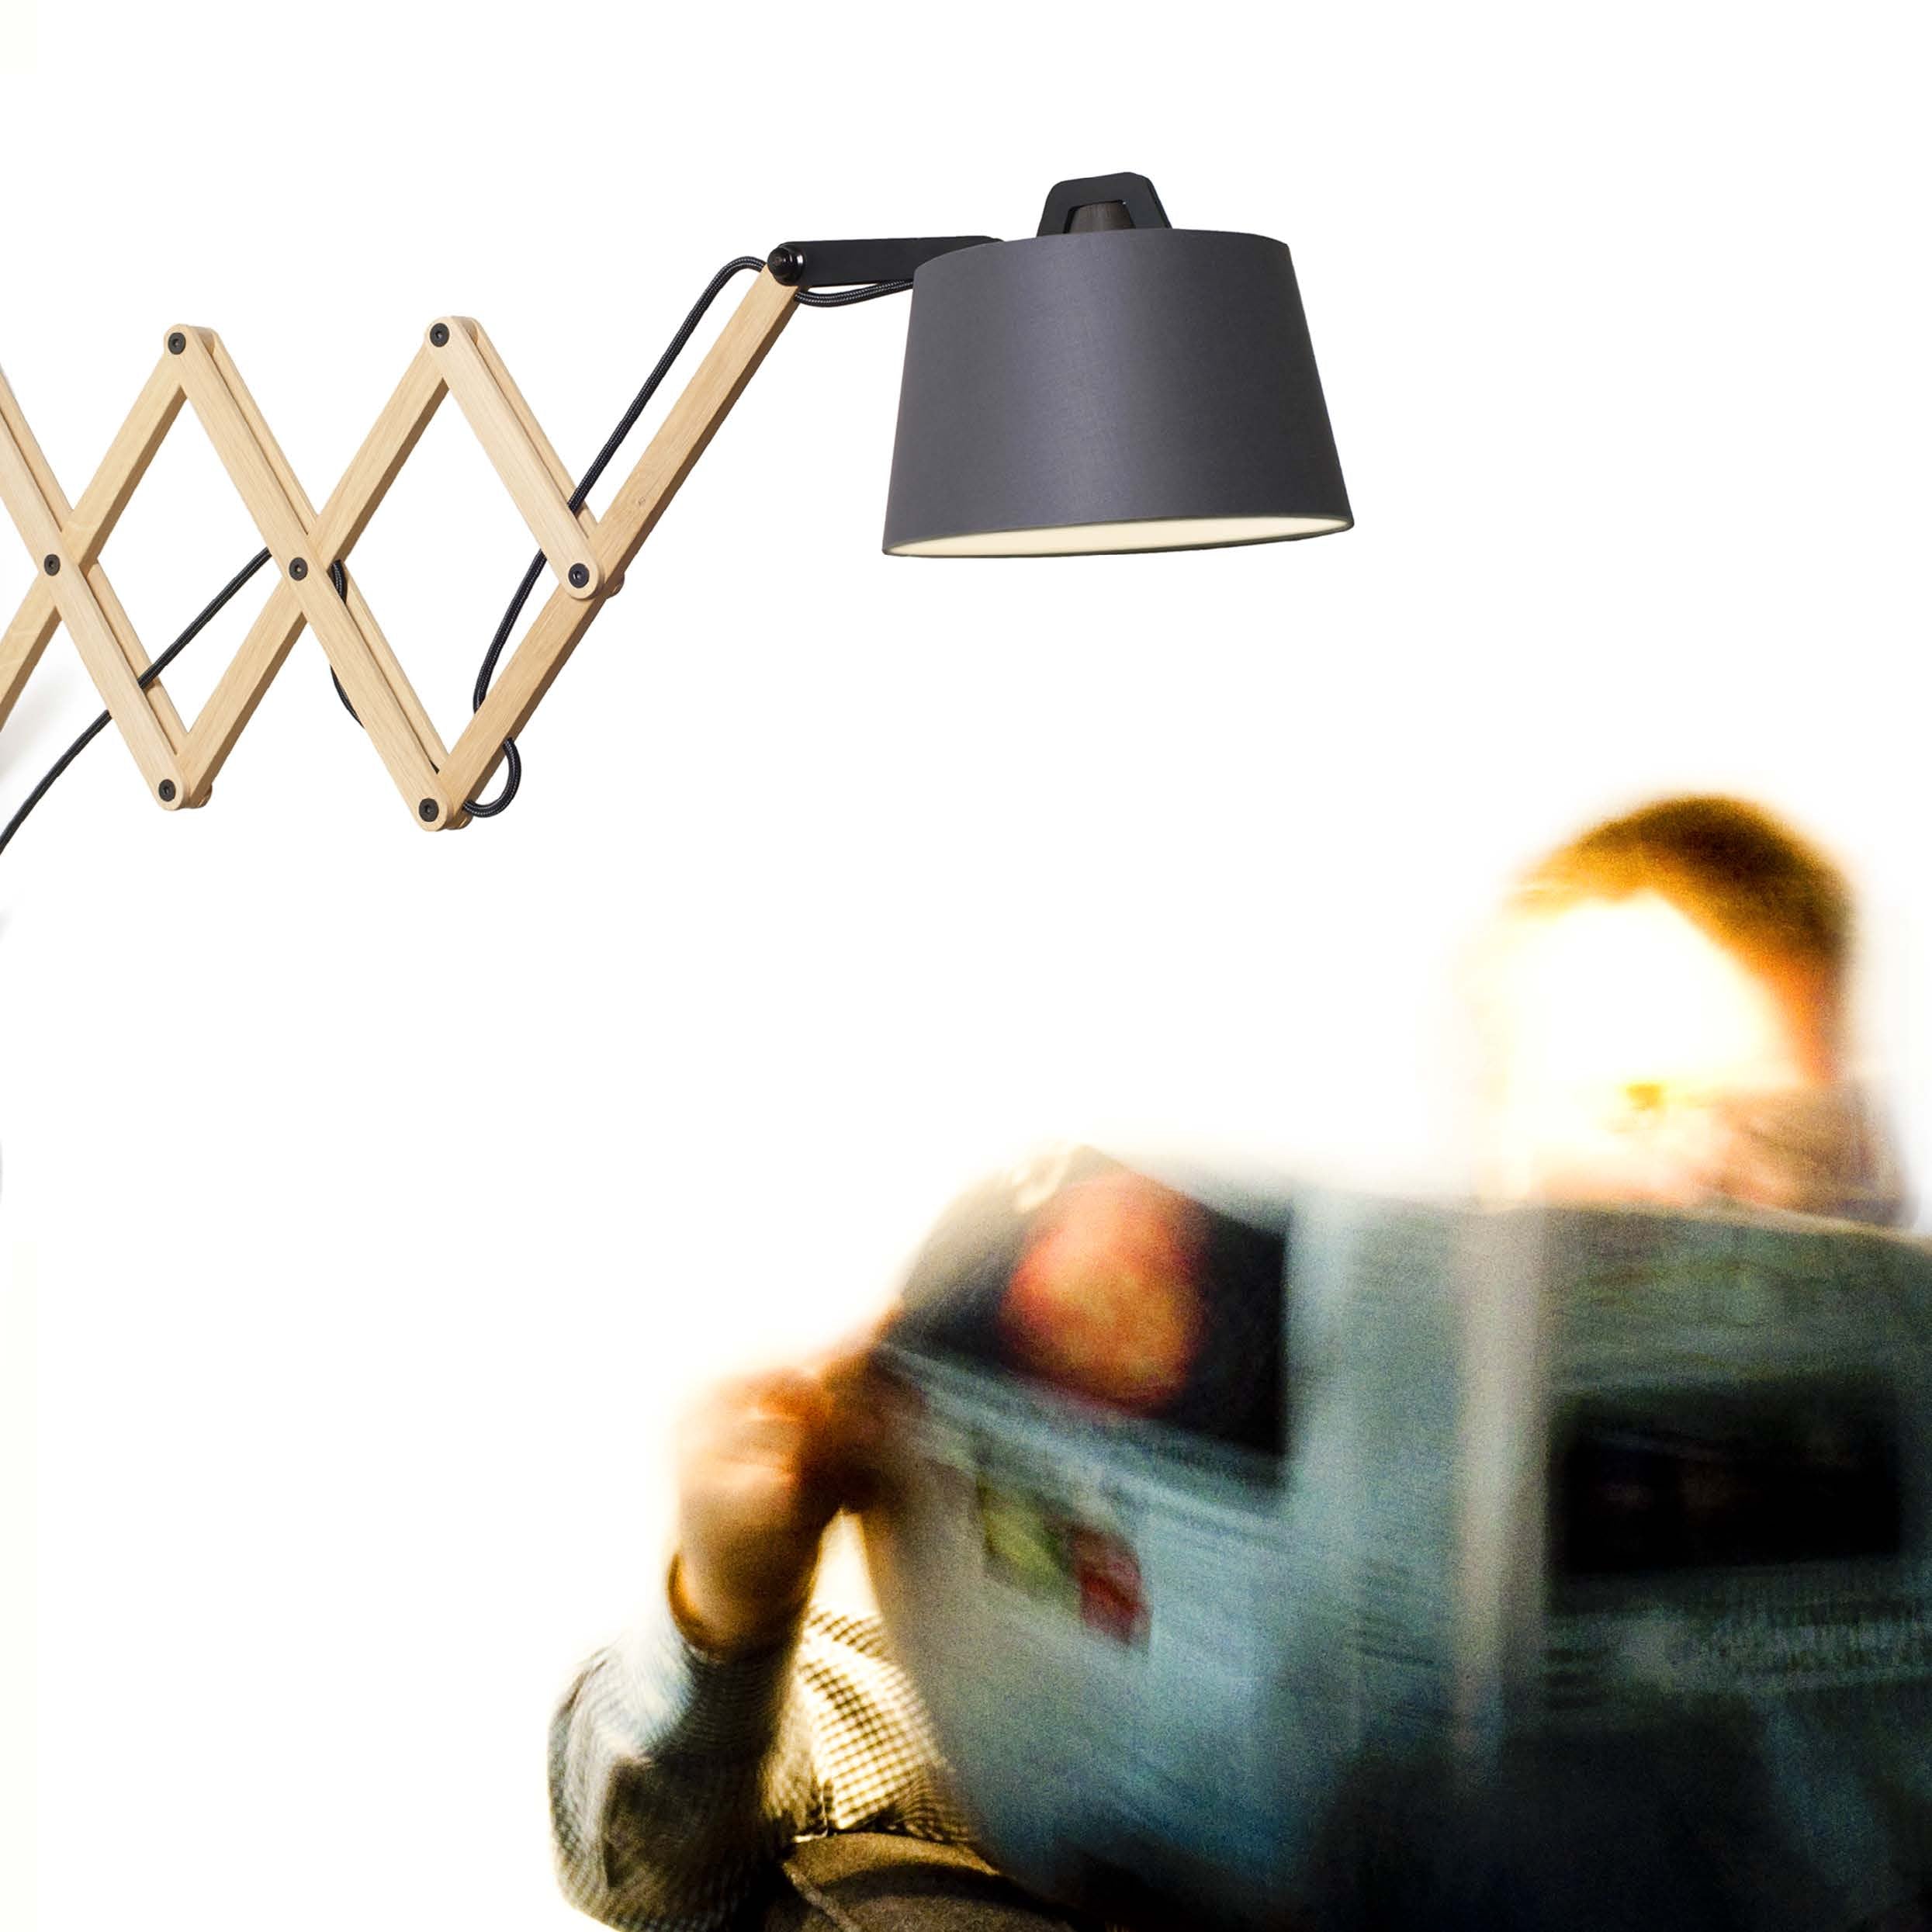 EDWARD wandlamp